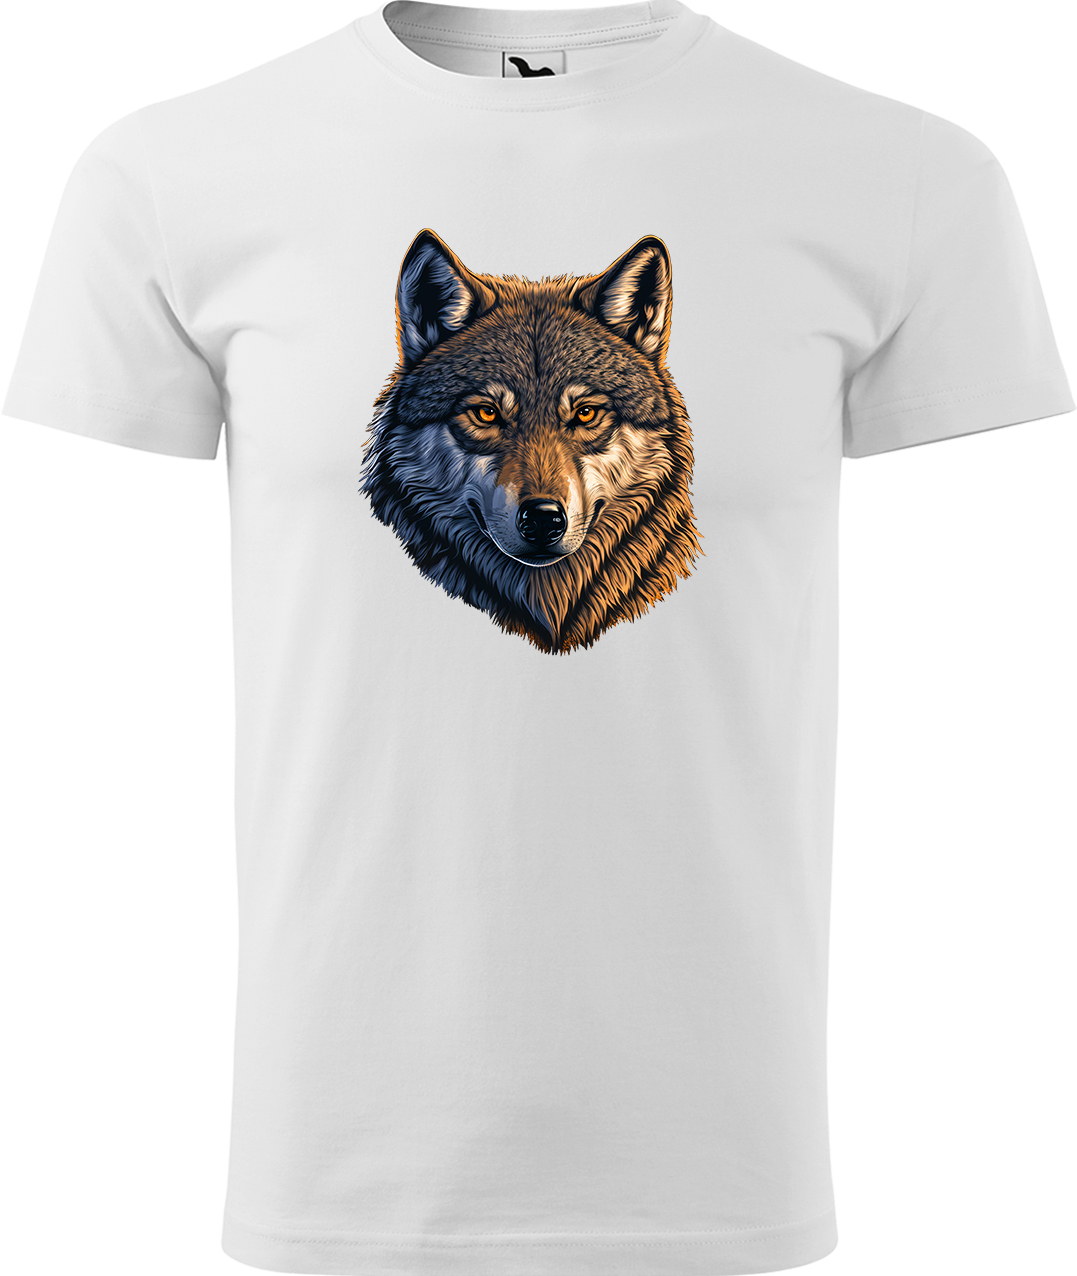 Pánské tričko s vlkem - Hlava vlka Velikost: L, Barva: Bílá (00), Střih: pánský